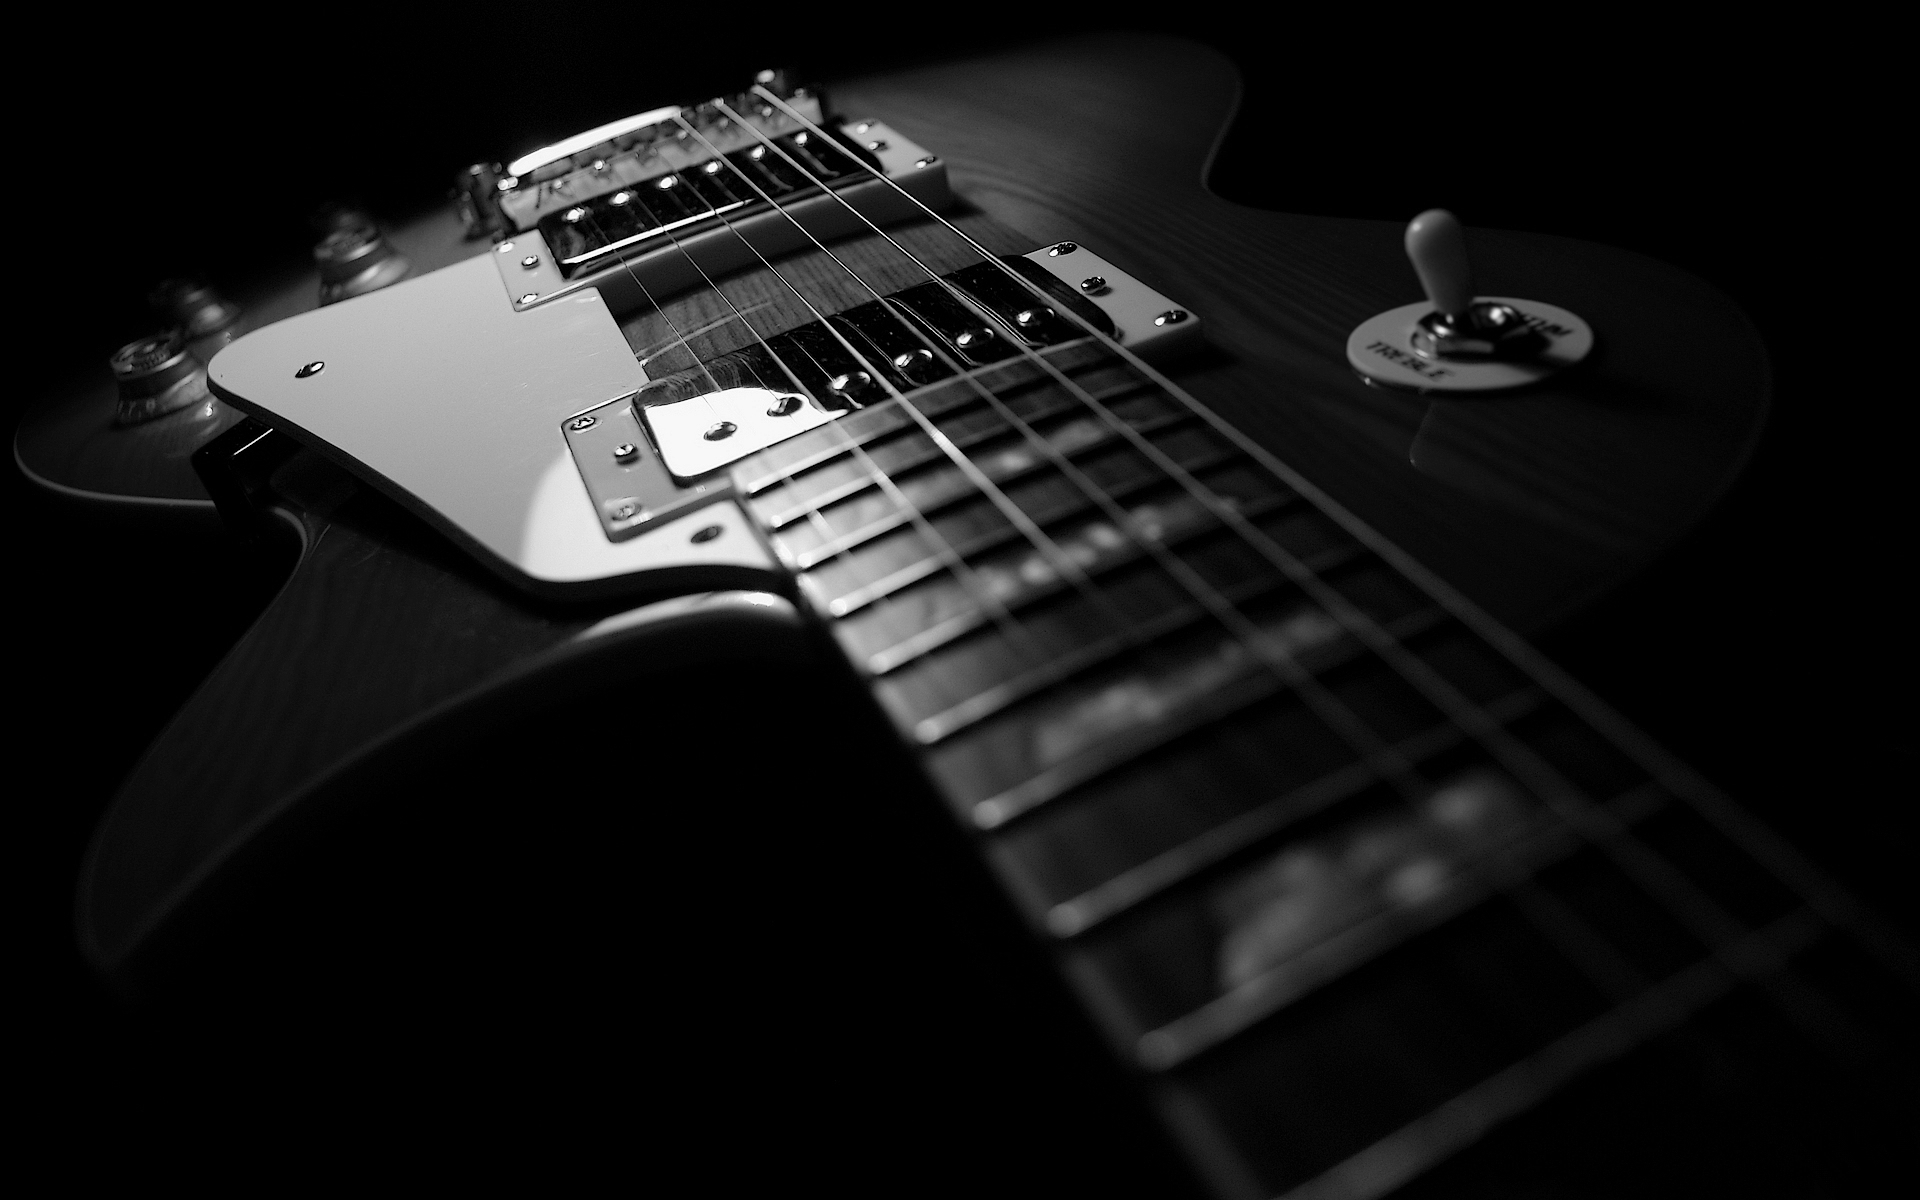 fond d'écran guitare noir,guitare,instrument de musique,guitare électrique,instruments à cordes pincées,accessoire instrument à cordes